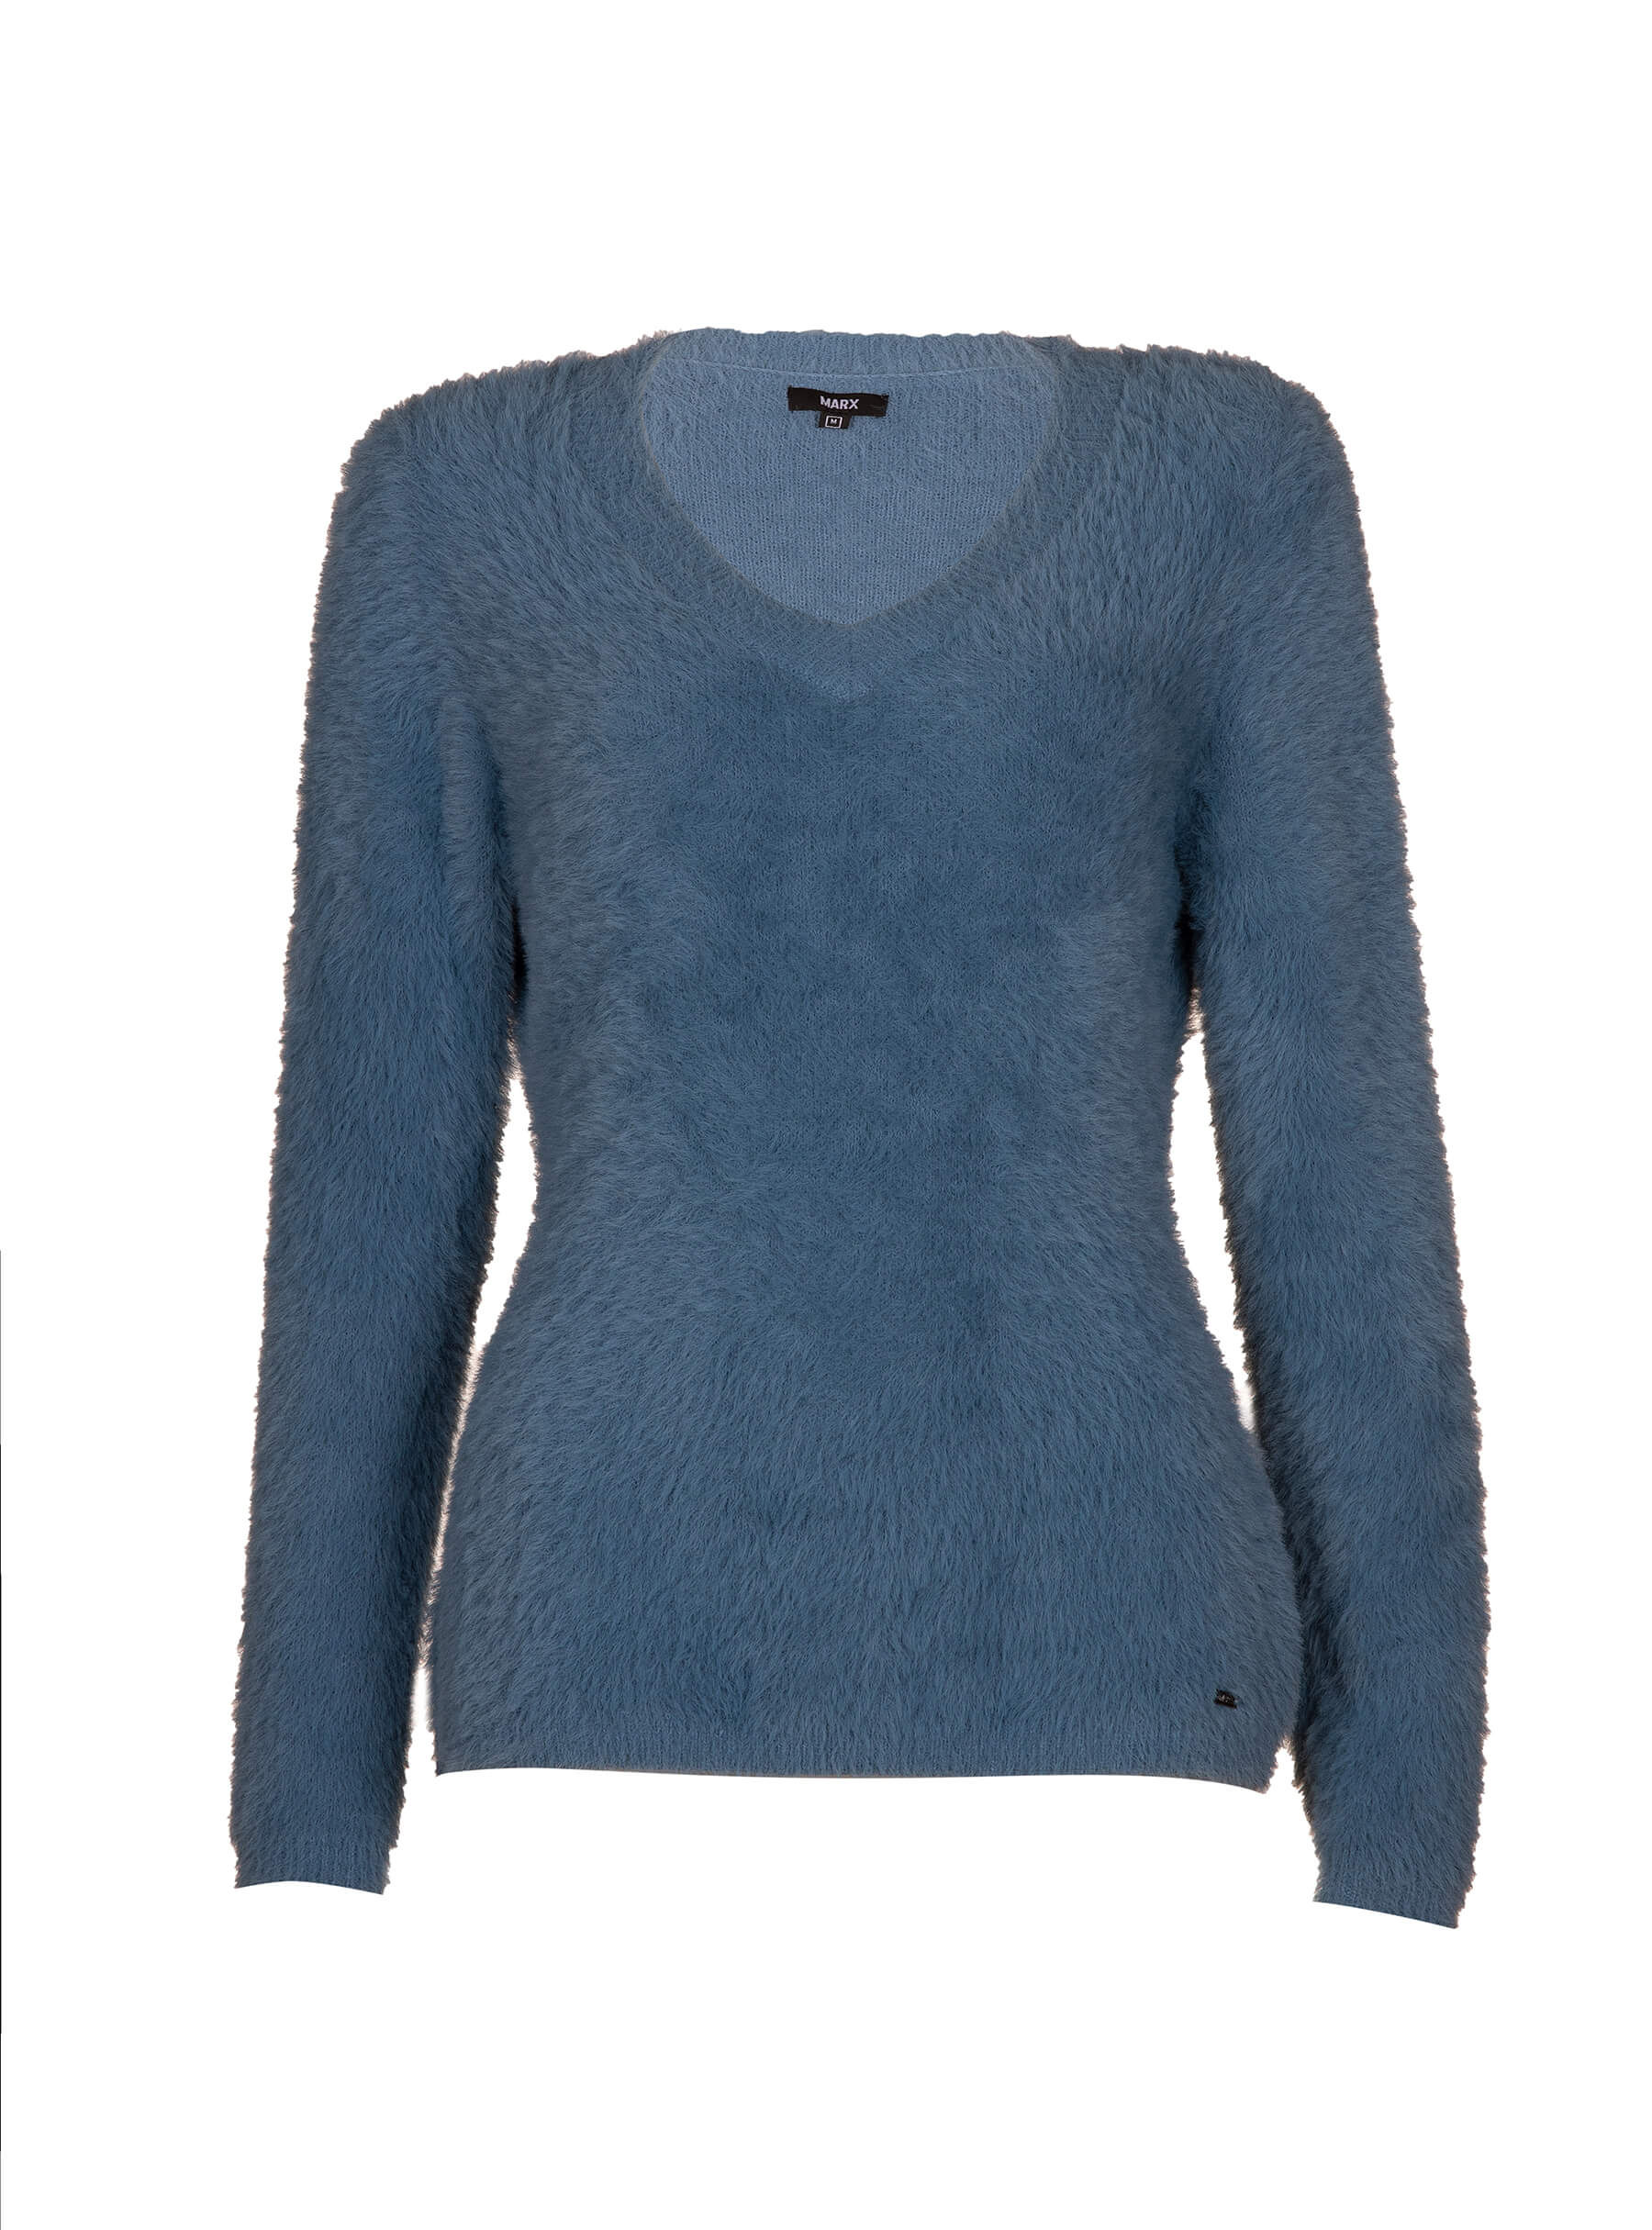 Marx džemper: redovna cena 5.399 rsd; 50%-70% sniženje